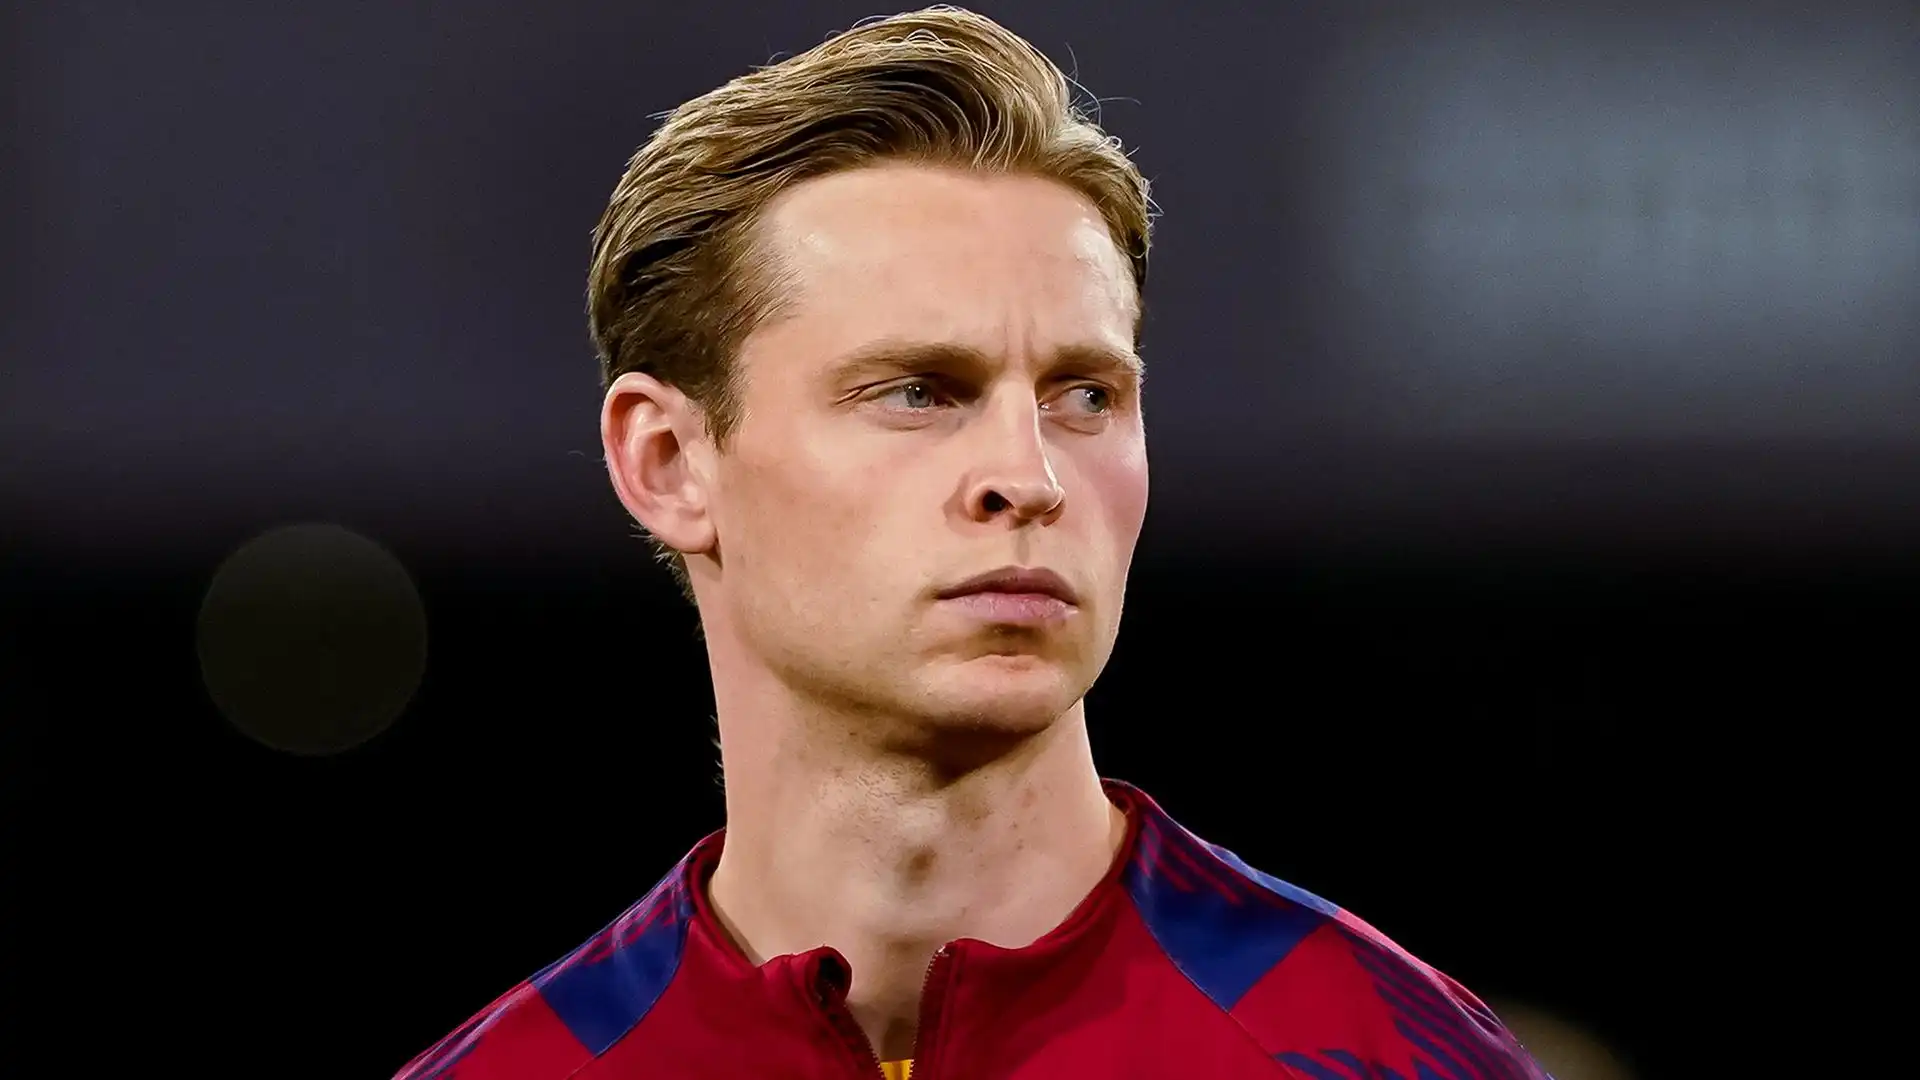 Secondo Sky Sport, il club bavarese sta valutando l'acquisto di Frenkie de Jong